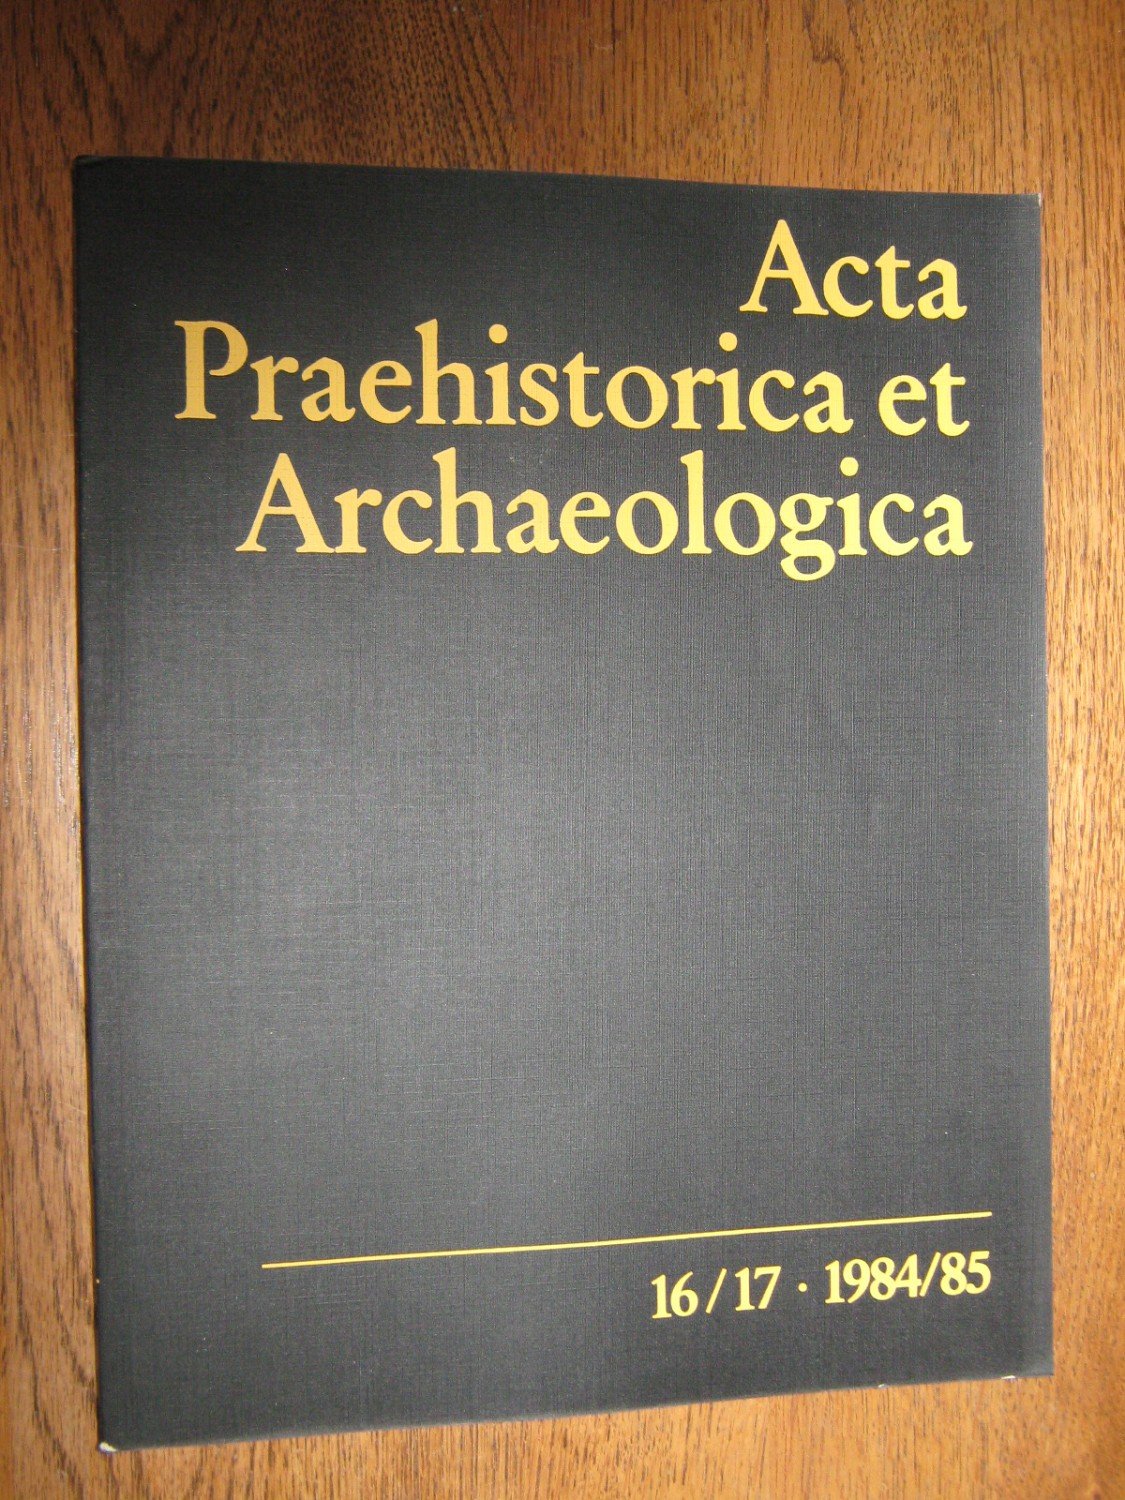 Acta Praehistorica et Archaelogica.“ (Müller, Adriaan von / Wilhelm Stegmann / Wolf-Dieter Dube ) – Buch Erstausgabe kaufen